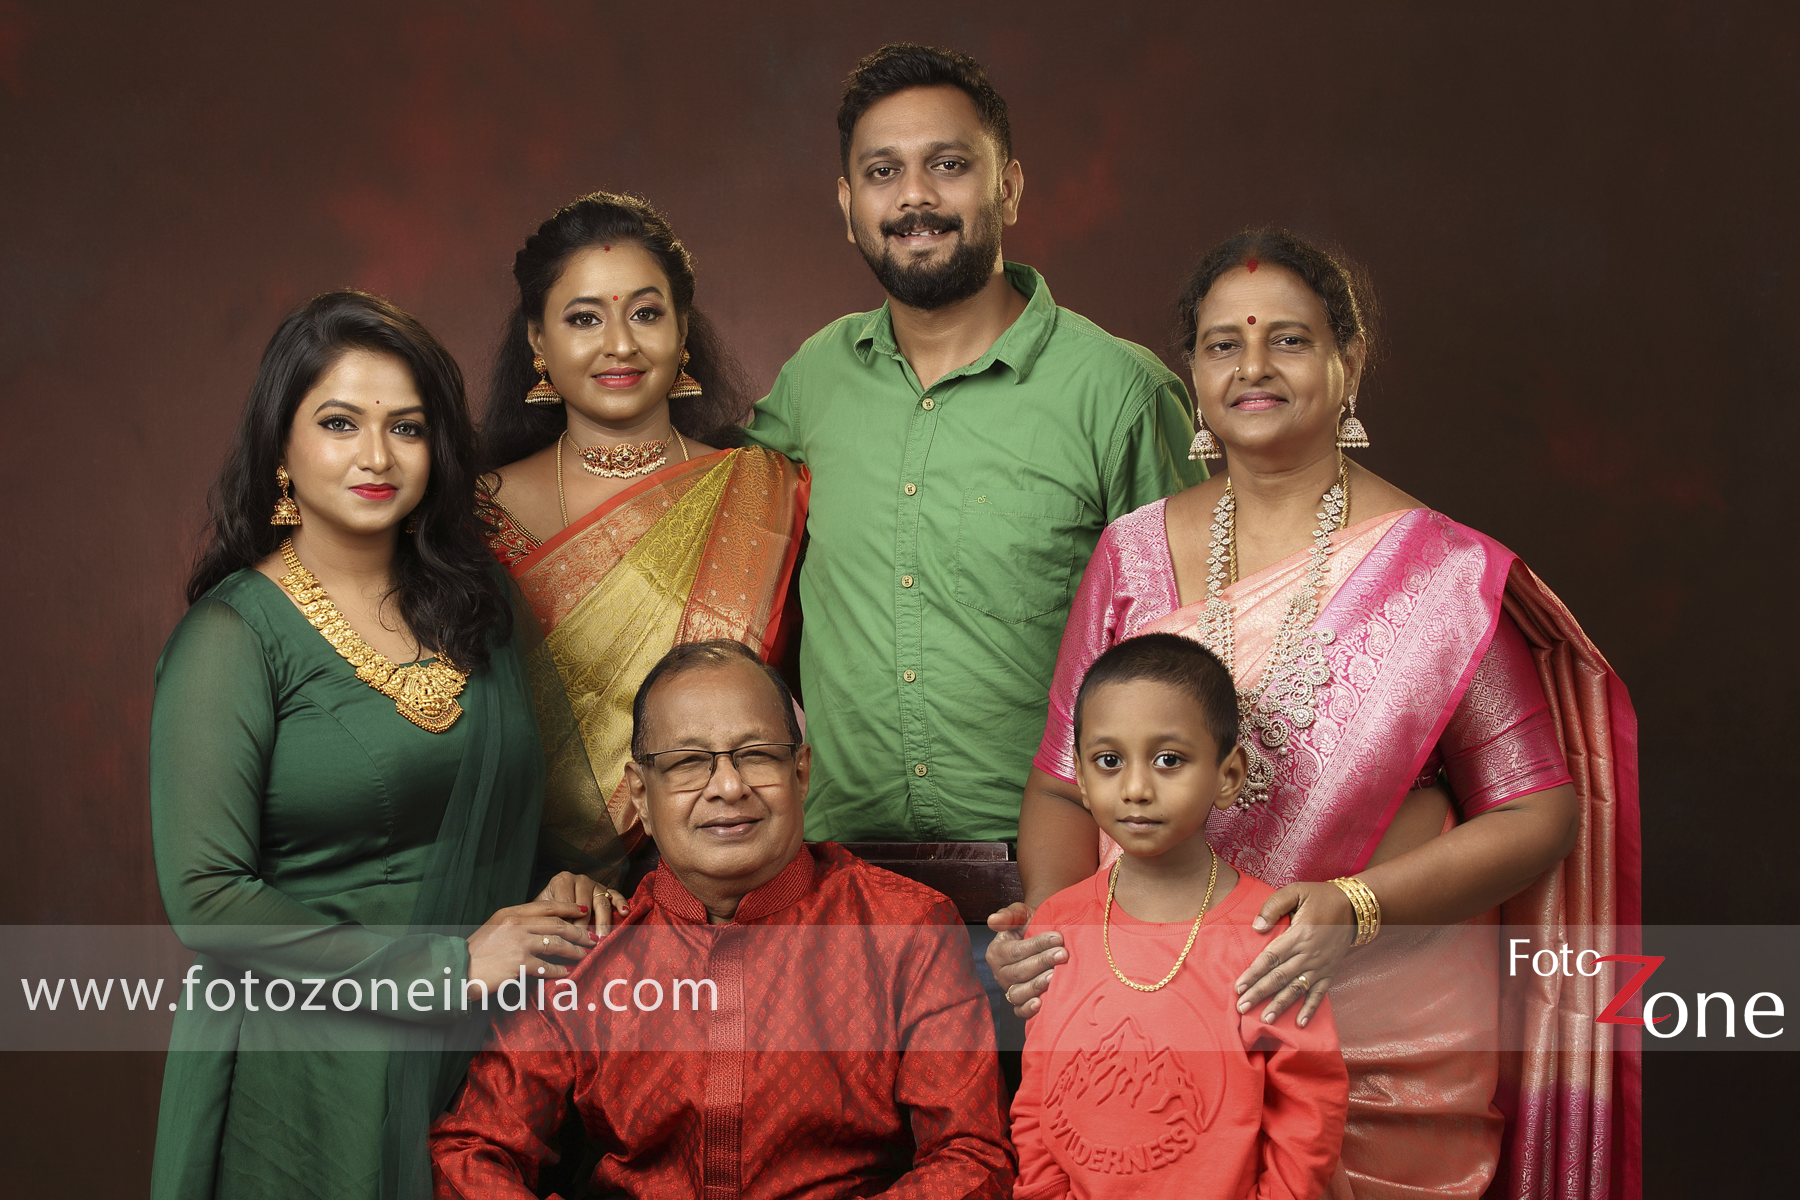 Family Photoshoot, Family Photography & Photographers in Delhi NCR